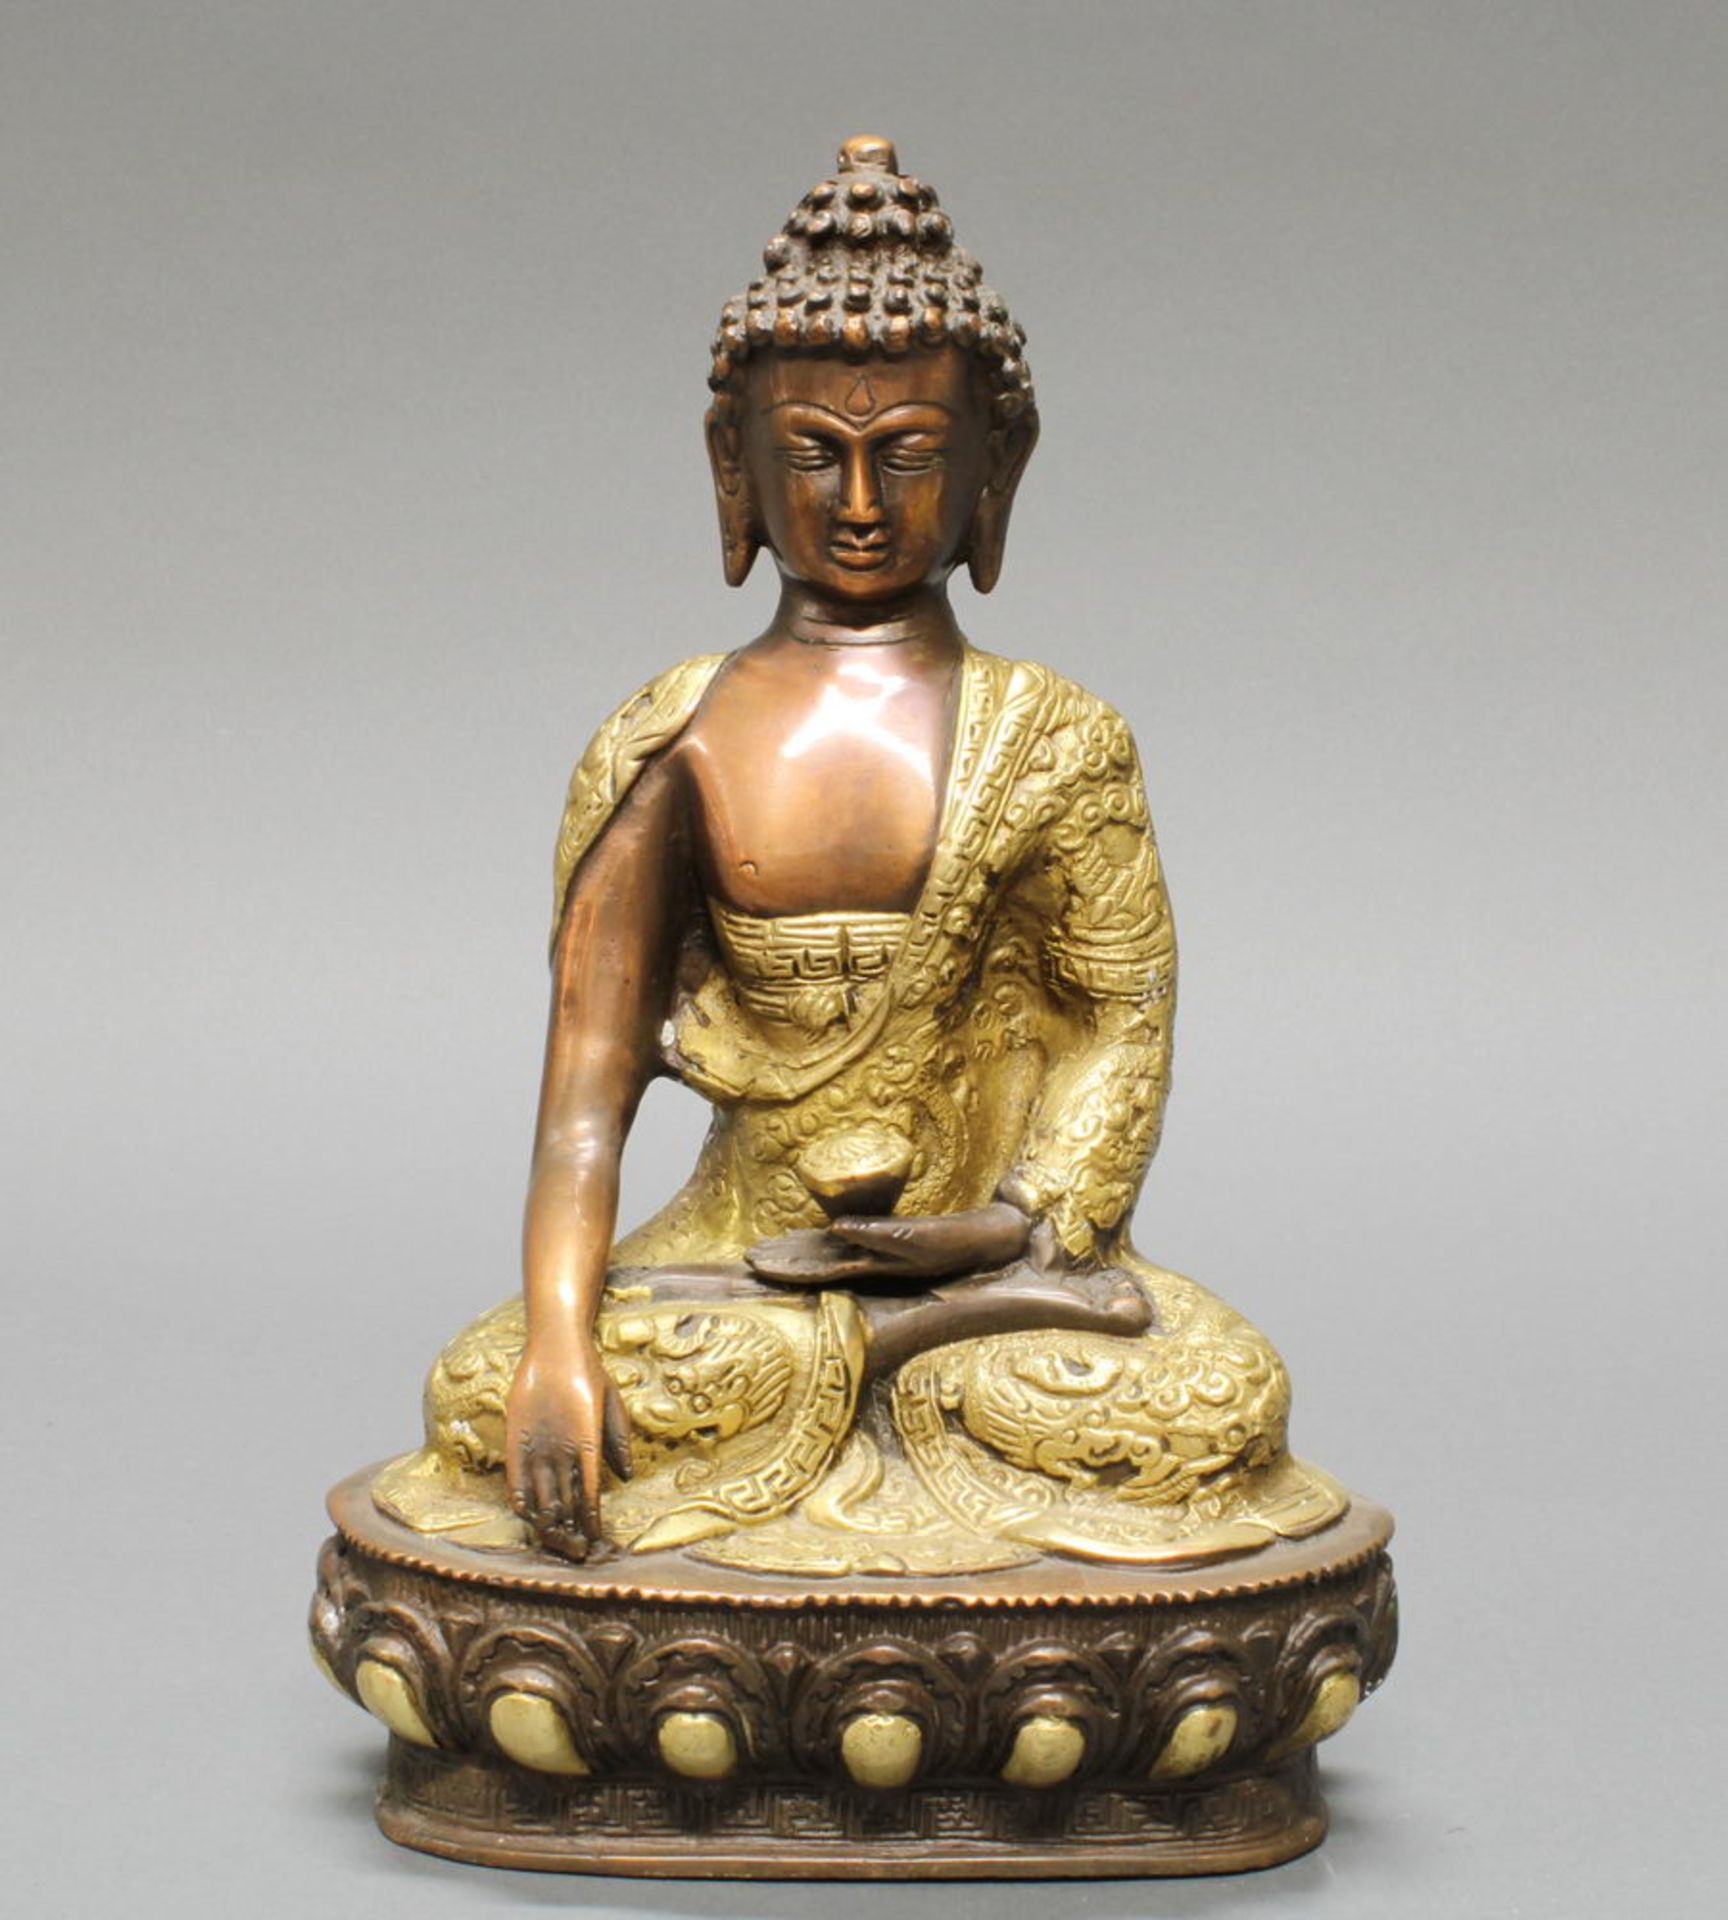 Sitzender Buddha, Nepal, 20. Jh., Messingbronze, teils vergoldet, die Hände in mudra, auf Lotossoc